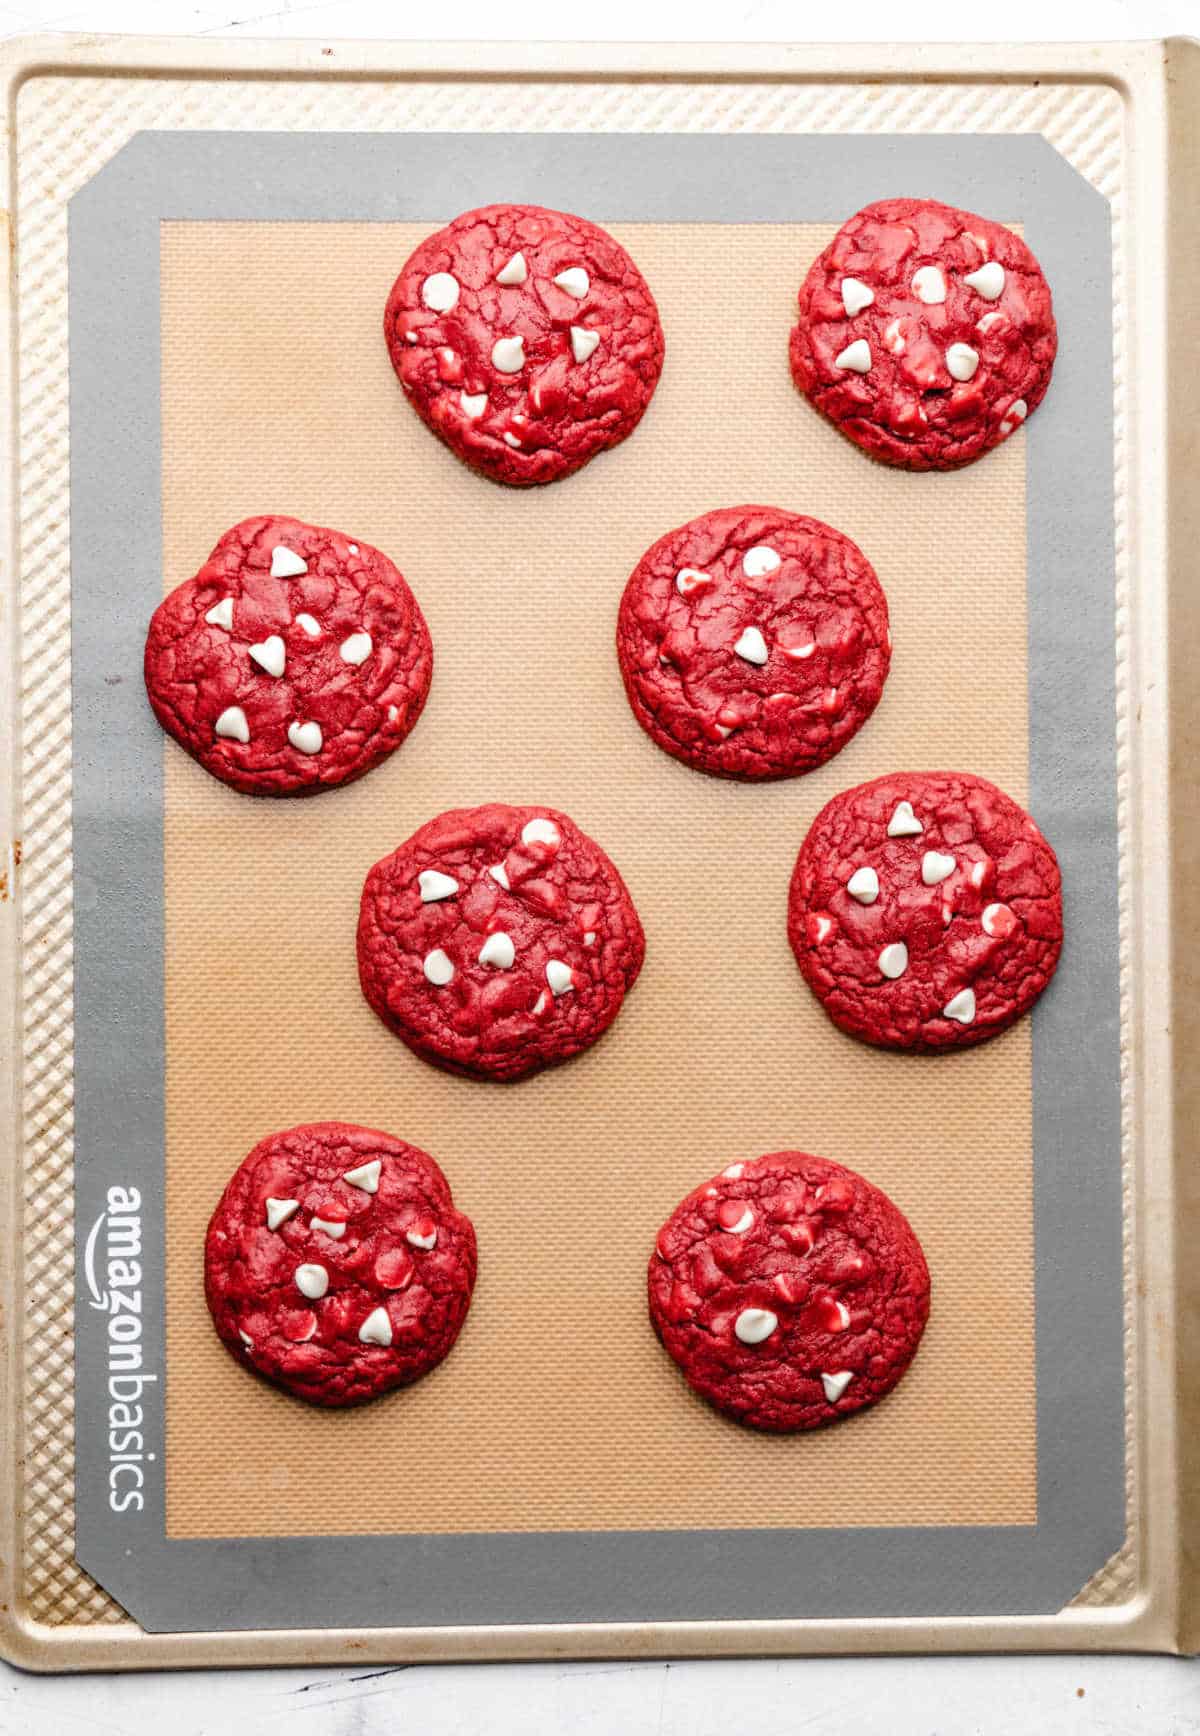 Baked red velvet cookies on a baking sheet. 